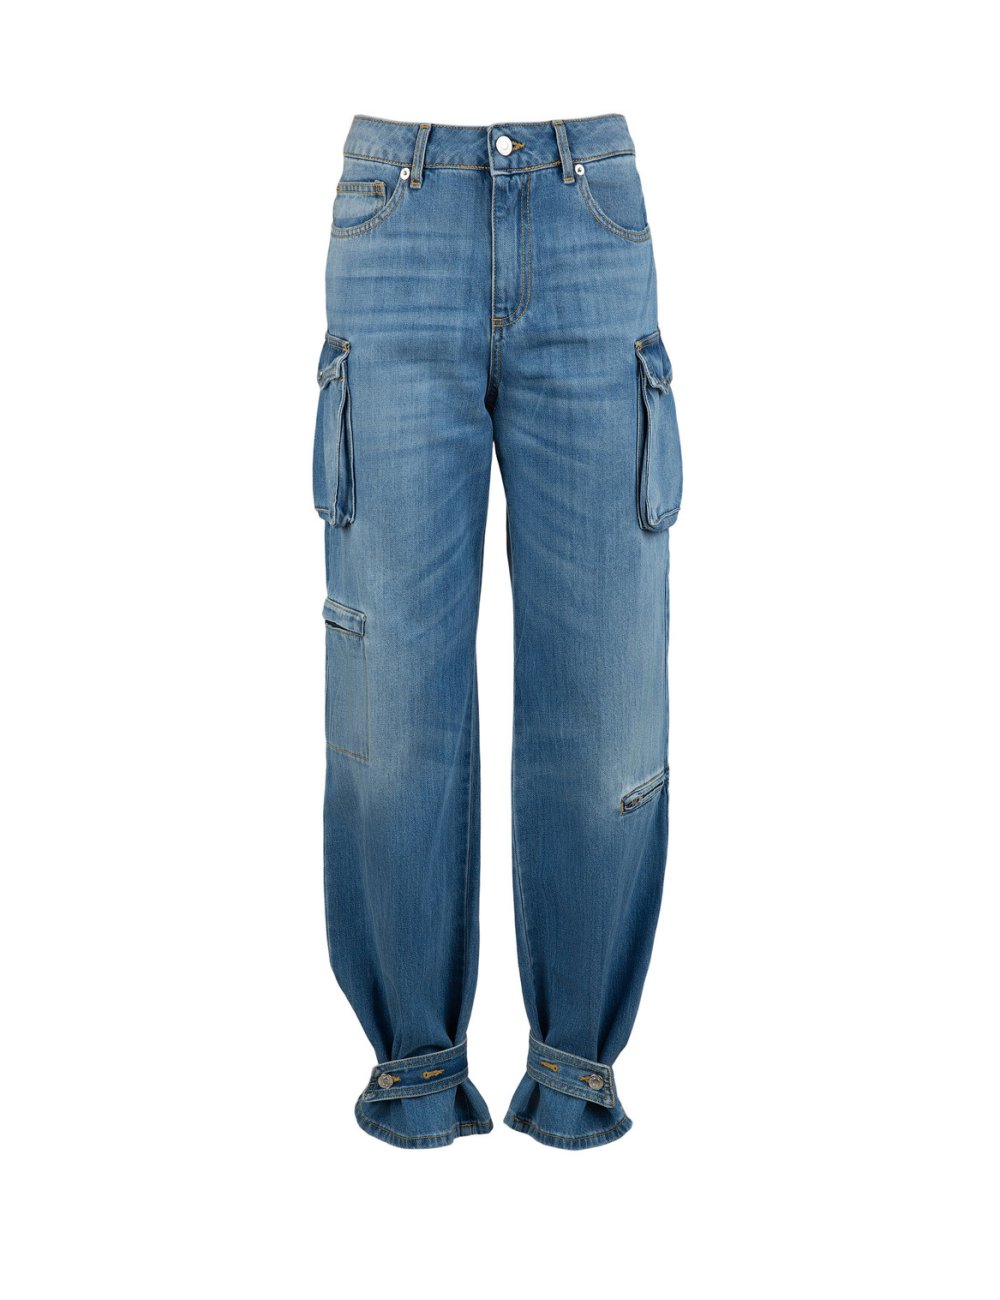 FW23-24 Jeans "Cargo" tinta unita